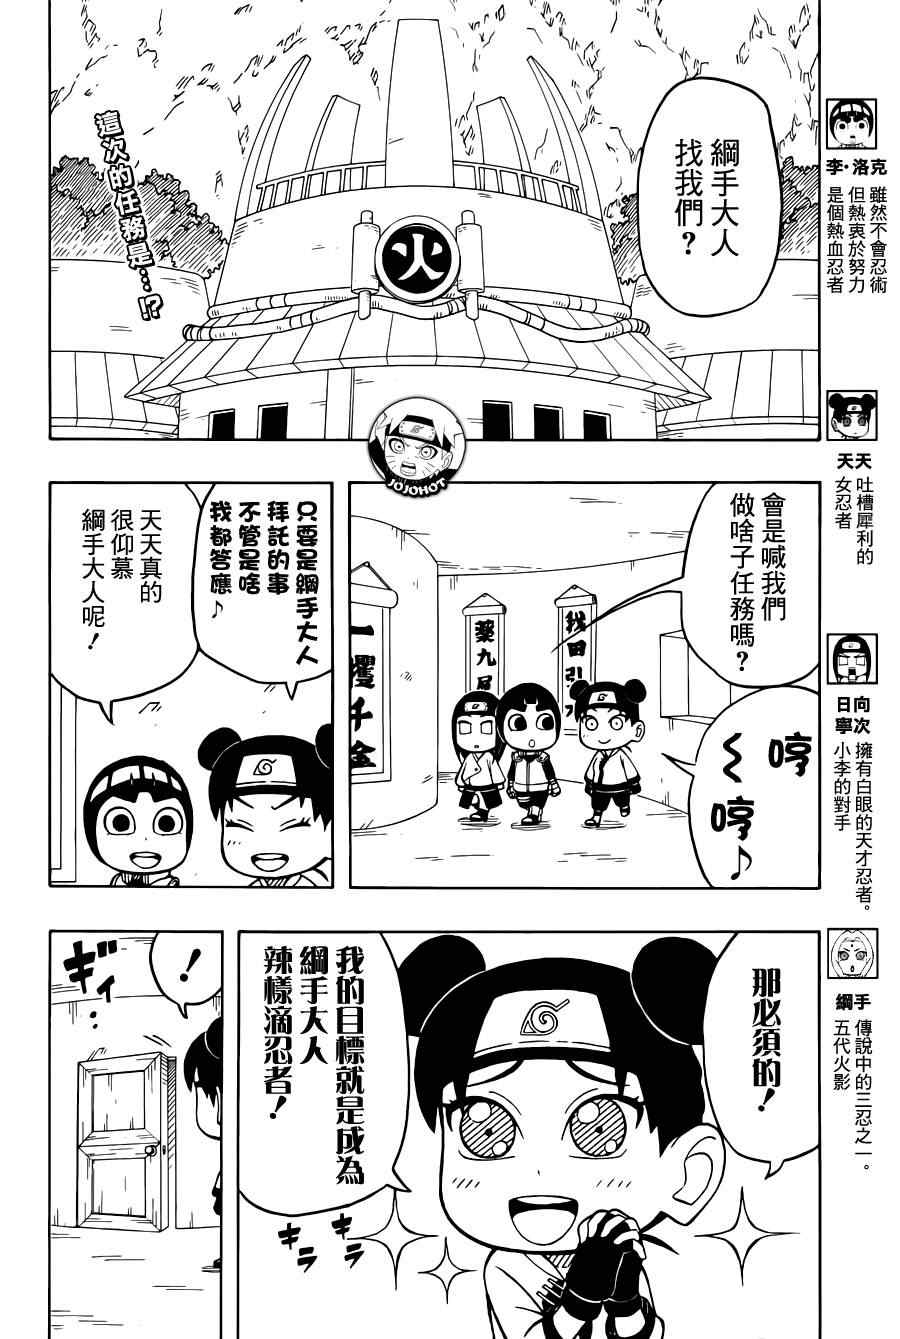 《洛克李之青春活力全开忍传》漫画 洛克李35集